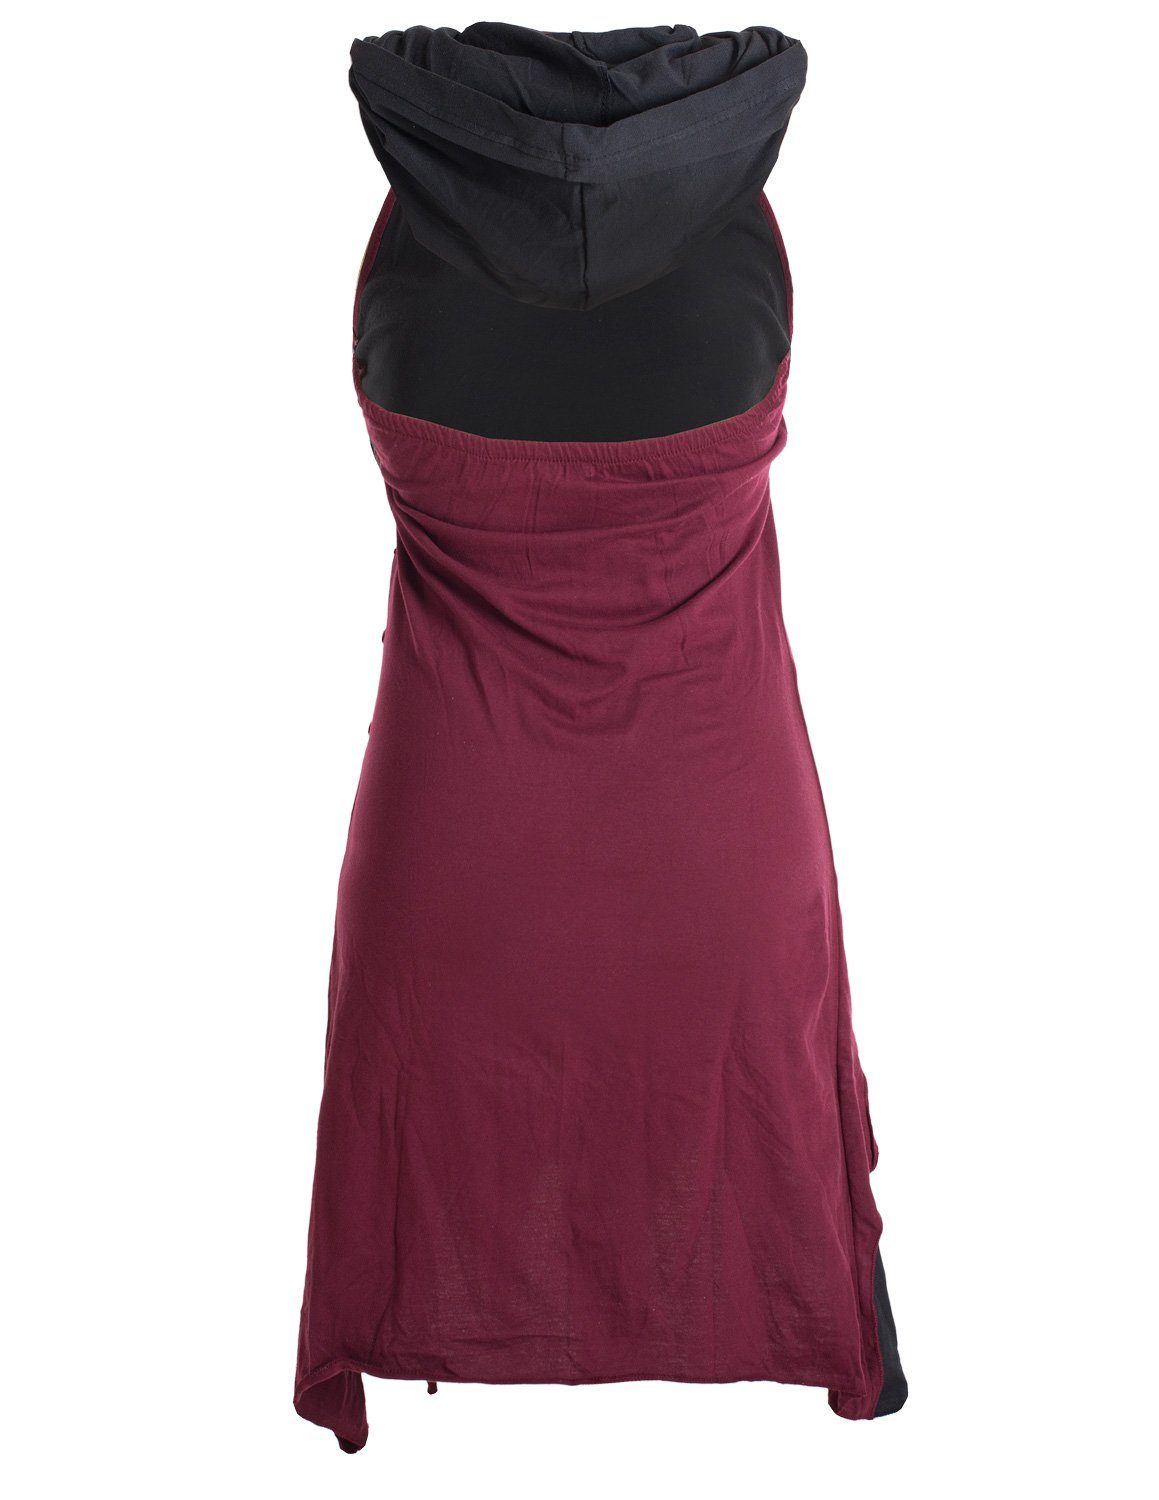 Kleid Kapuzen Hippie, Baumwolle Lagenlook Elfen aus Neckholderkleid Zipfel-Neckholder Vishes dunkelrot Goa,